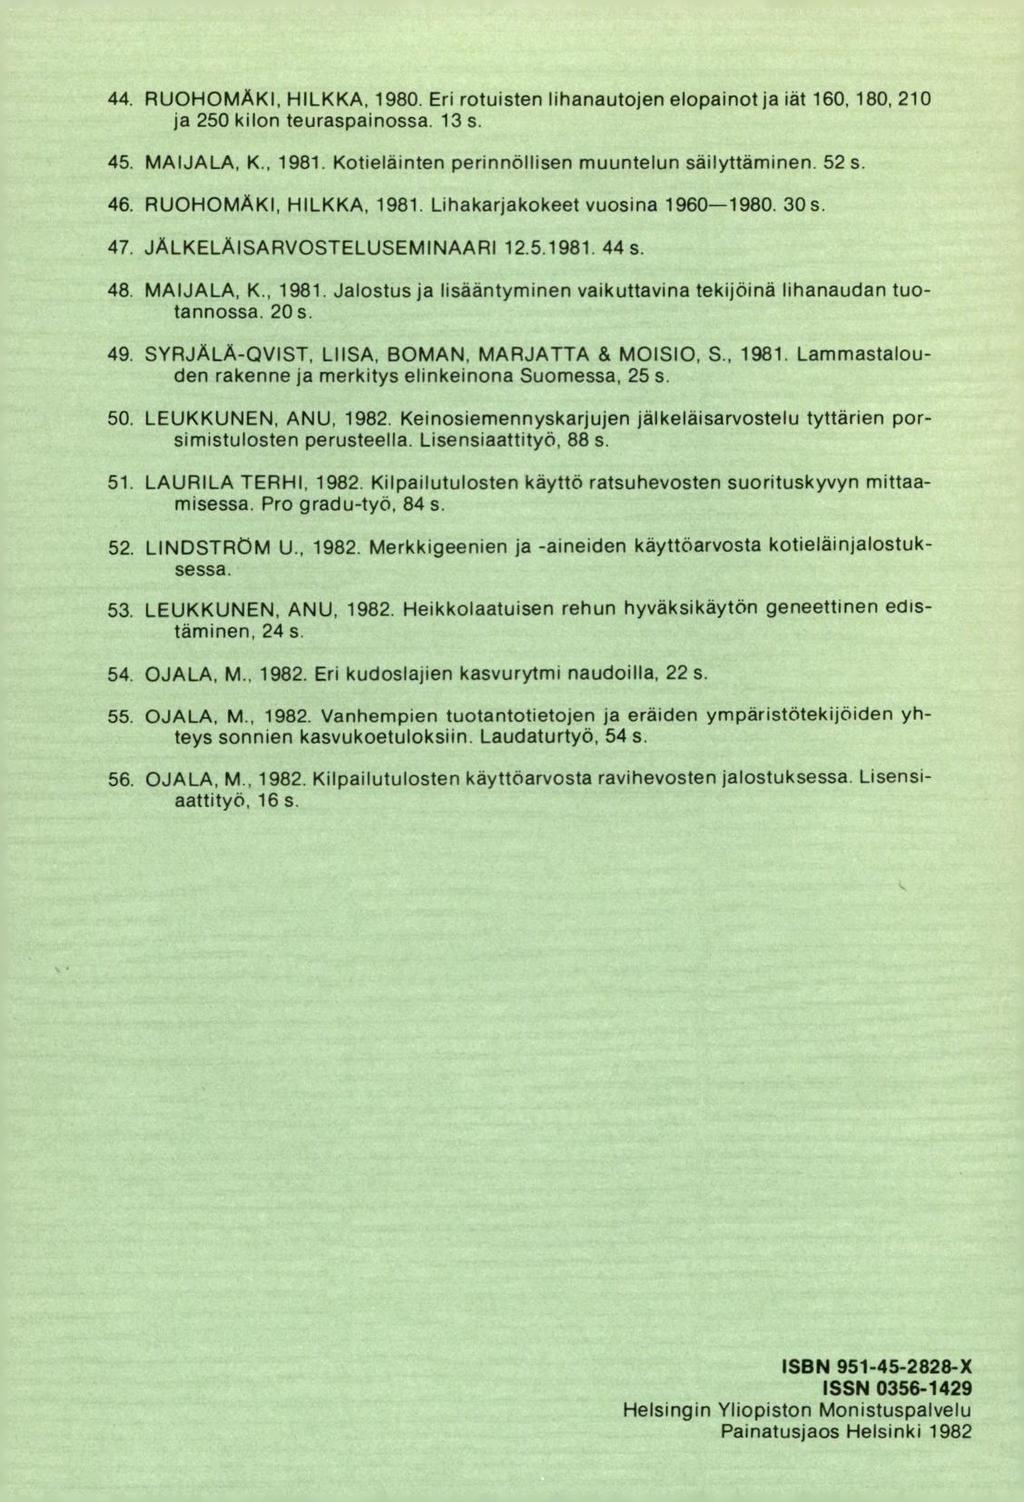 RUOHOMÄKI, HILKKA, 1980. Eri rotuisten lihanautojen elopainot ja iät 160, 180, 210 ja 250 kilon teuraspainossa. 13$. MAIJALA, K., 1981. Kotieläinten perinnöllisen muuntelun säilyttäminen. 52 s.